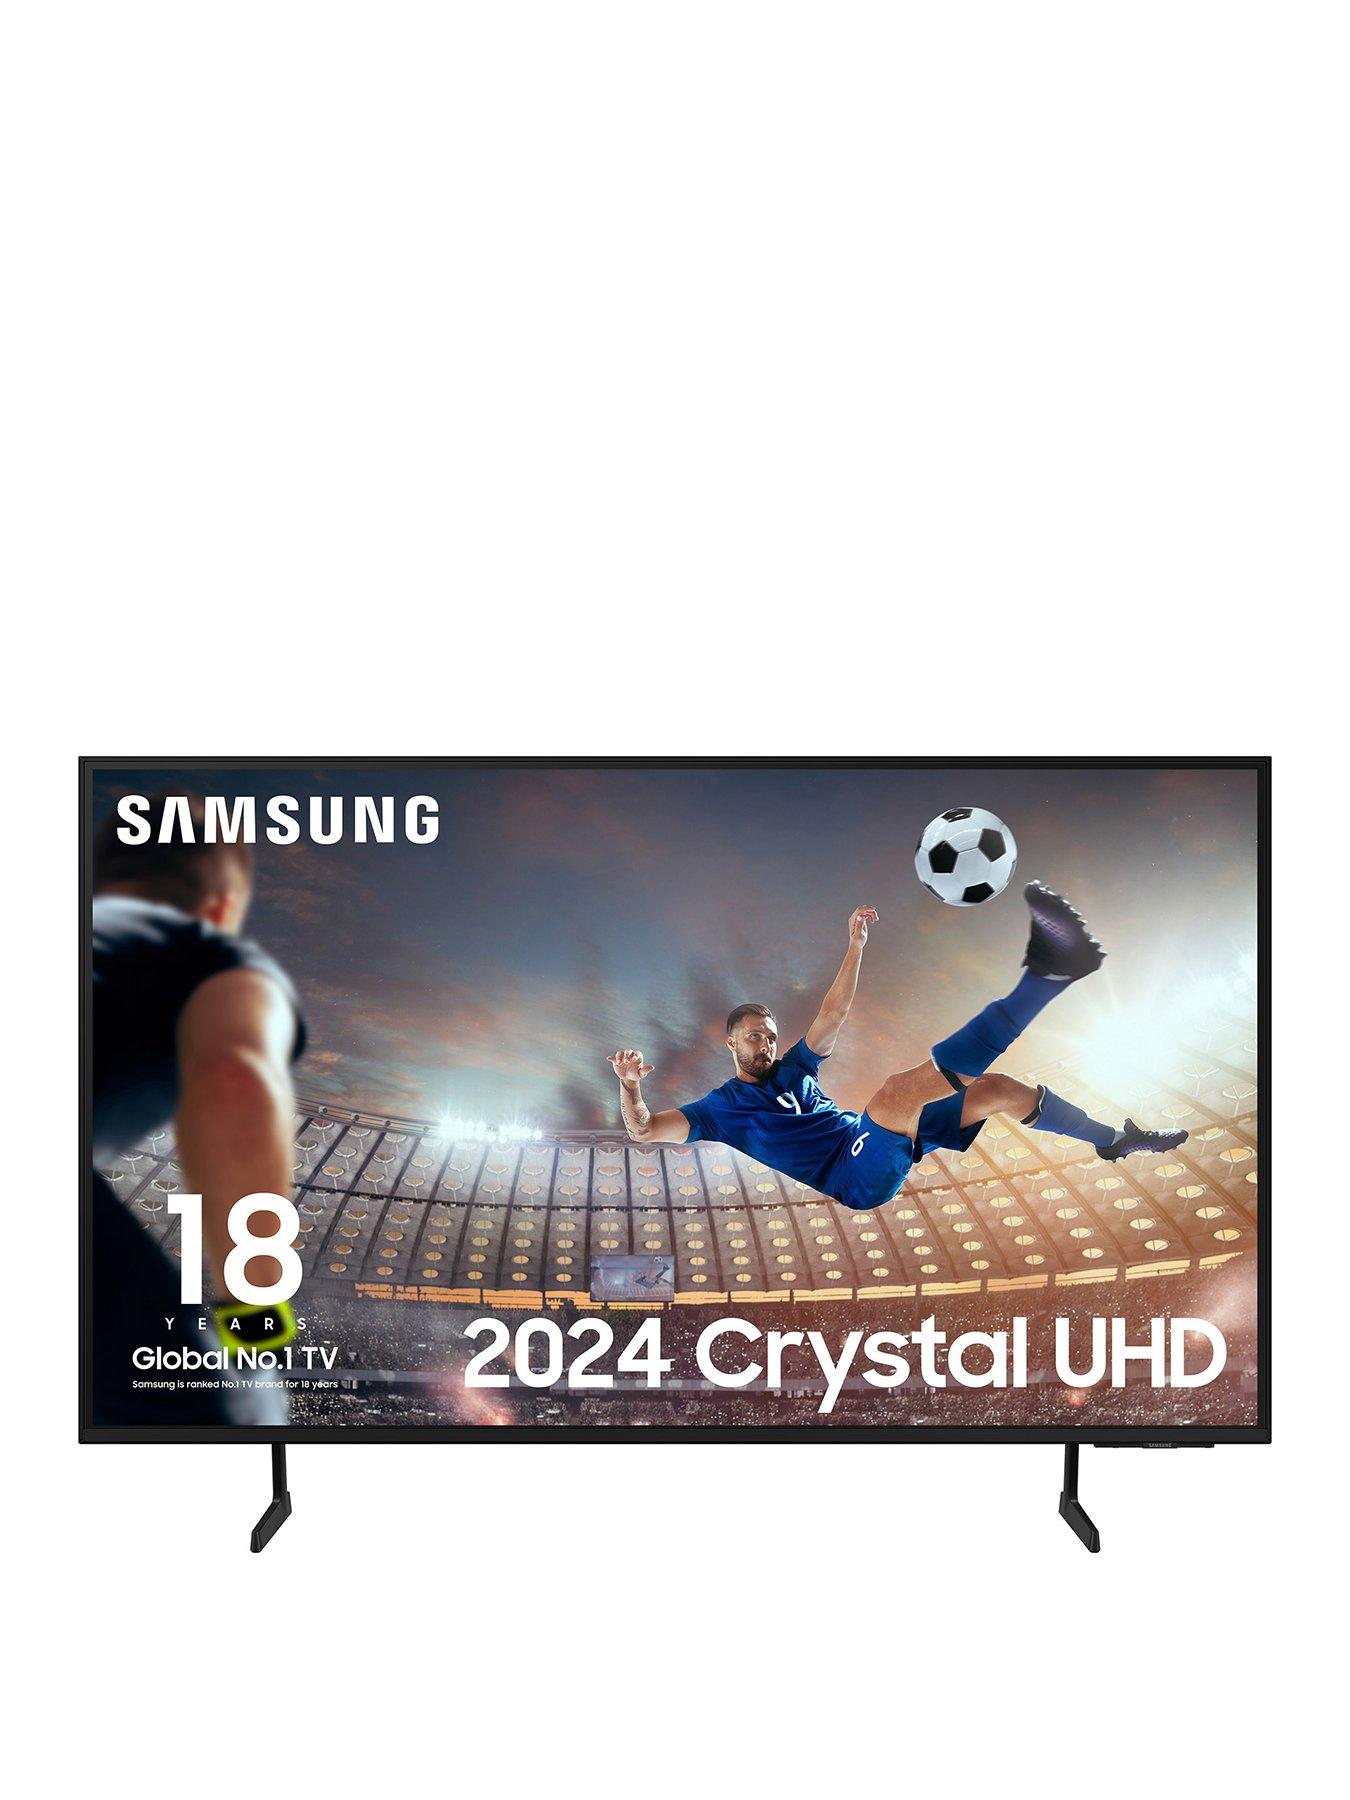 Samsung Du7100 50 Inch Crystal Uhd 4K Smart Tv